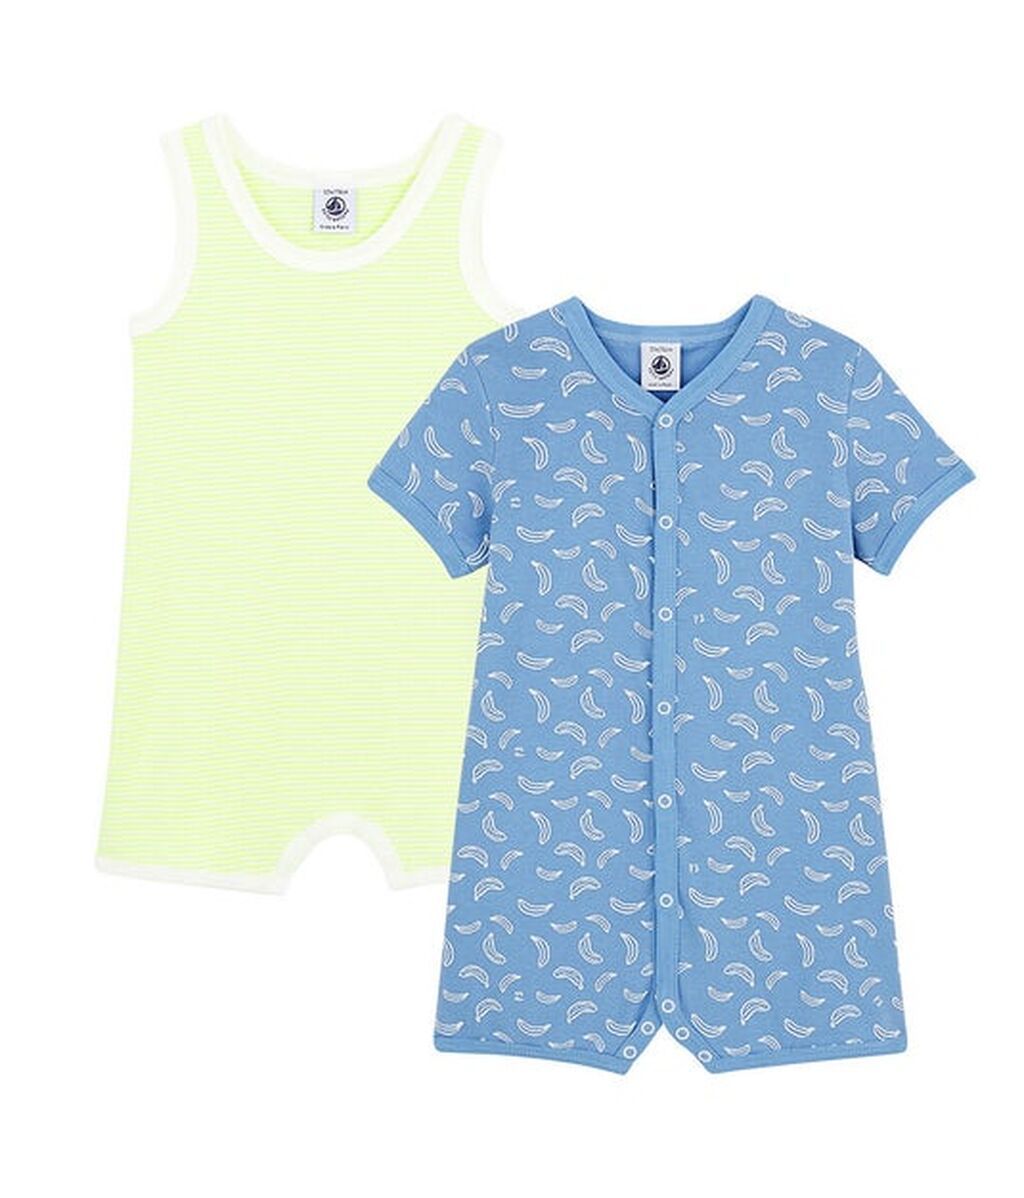 Cómo vestir a un recién nacido en verano: 6 prendas